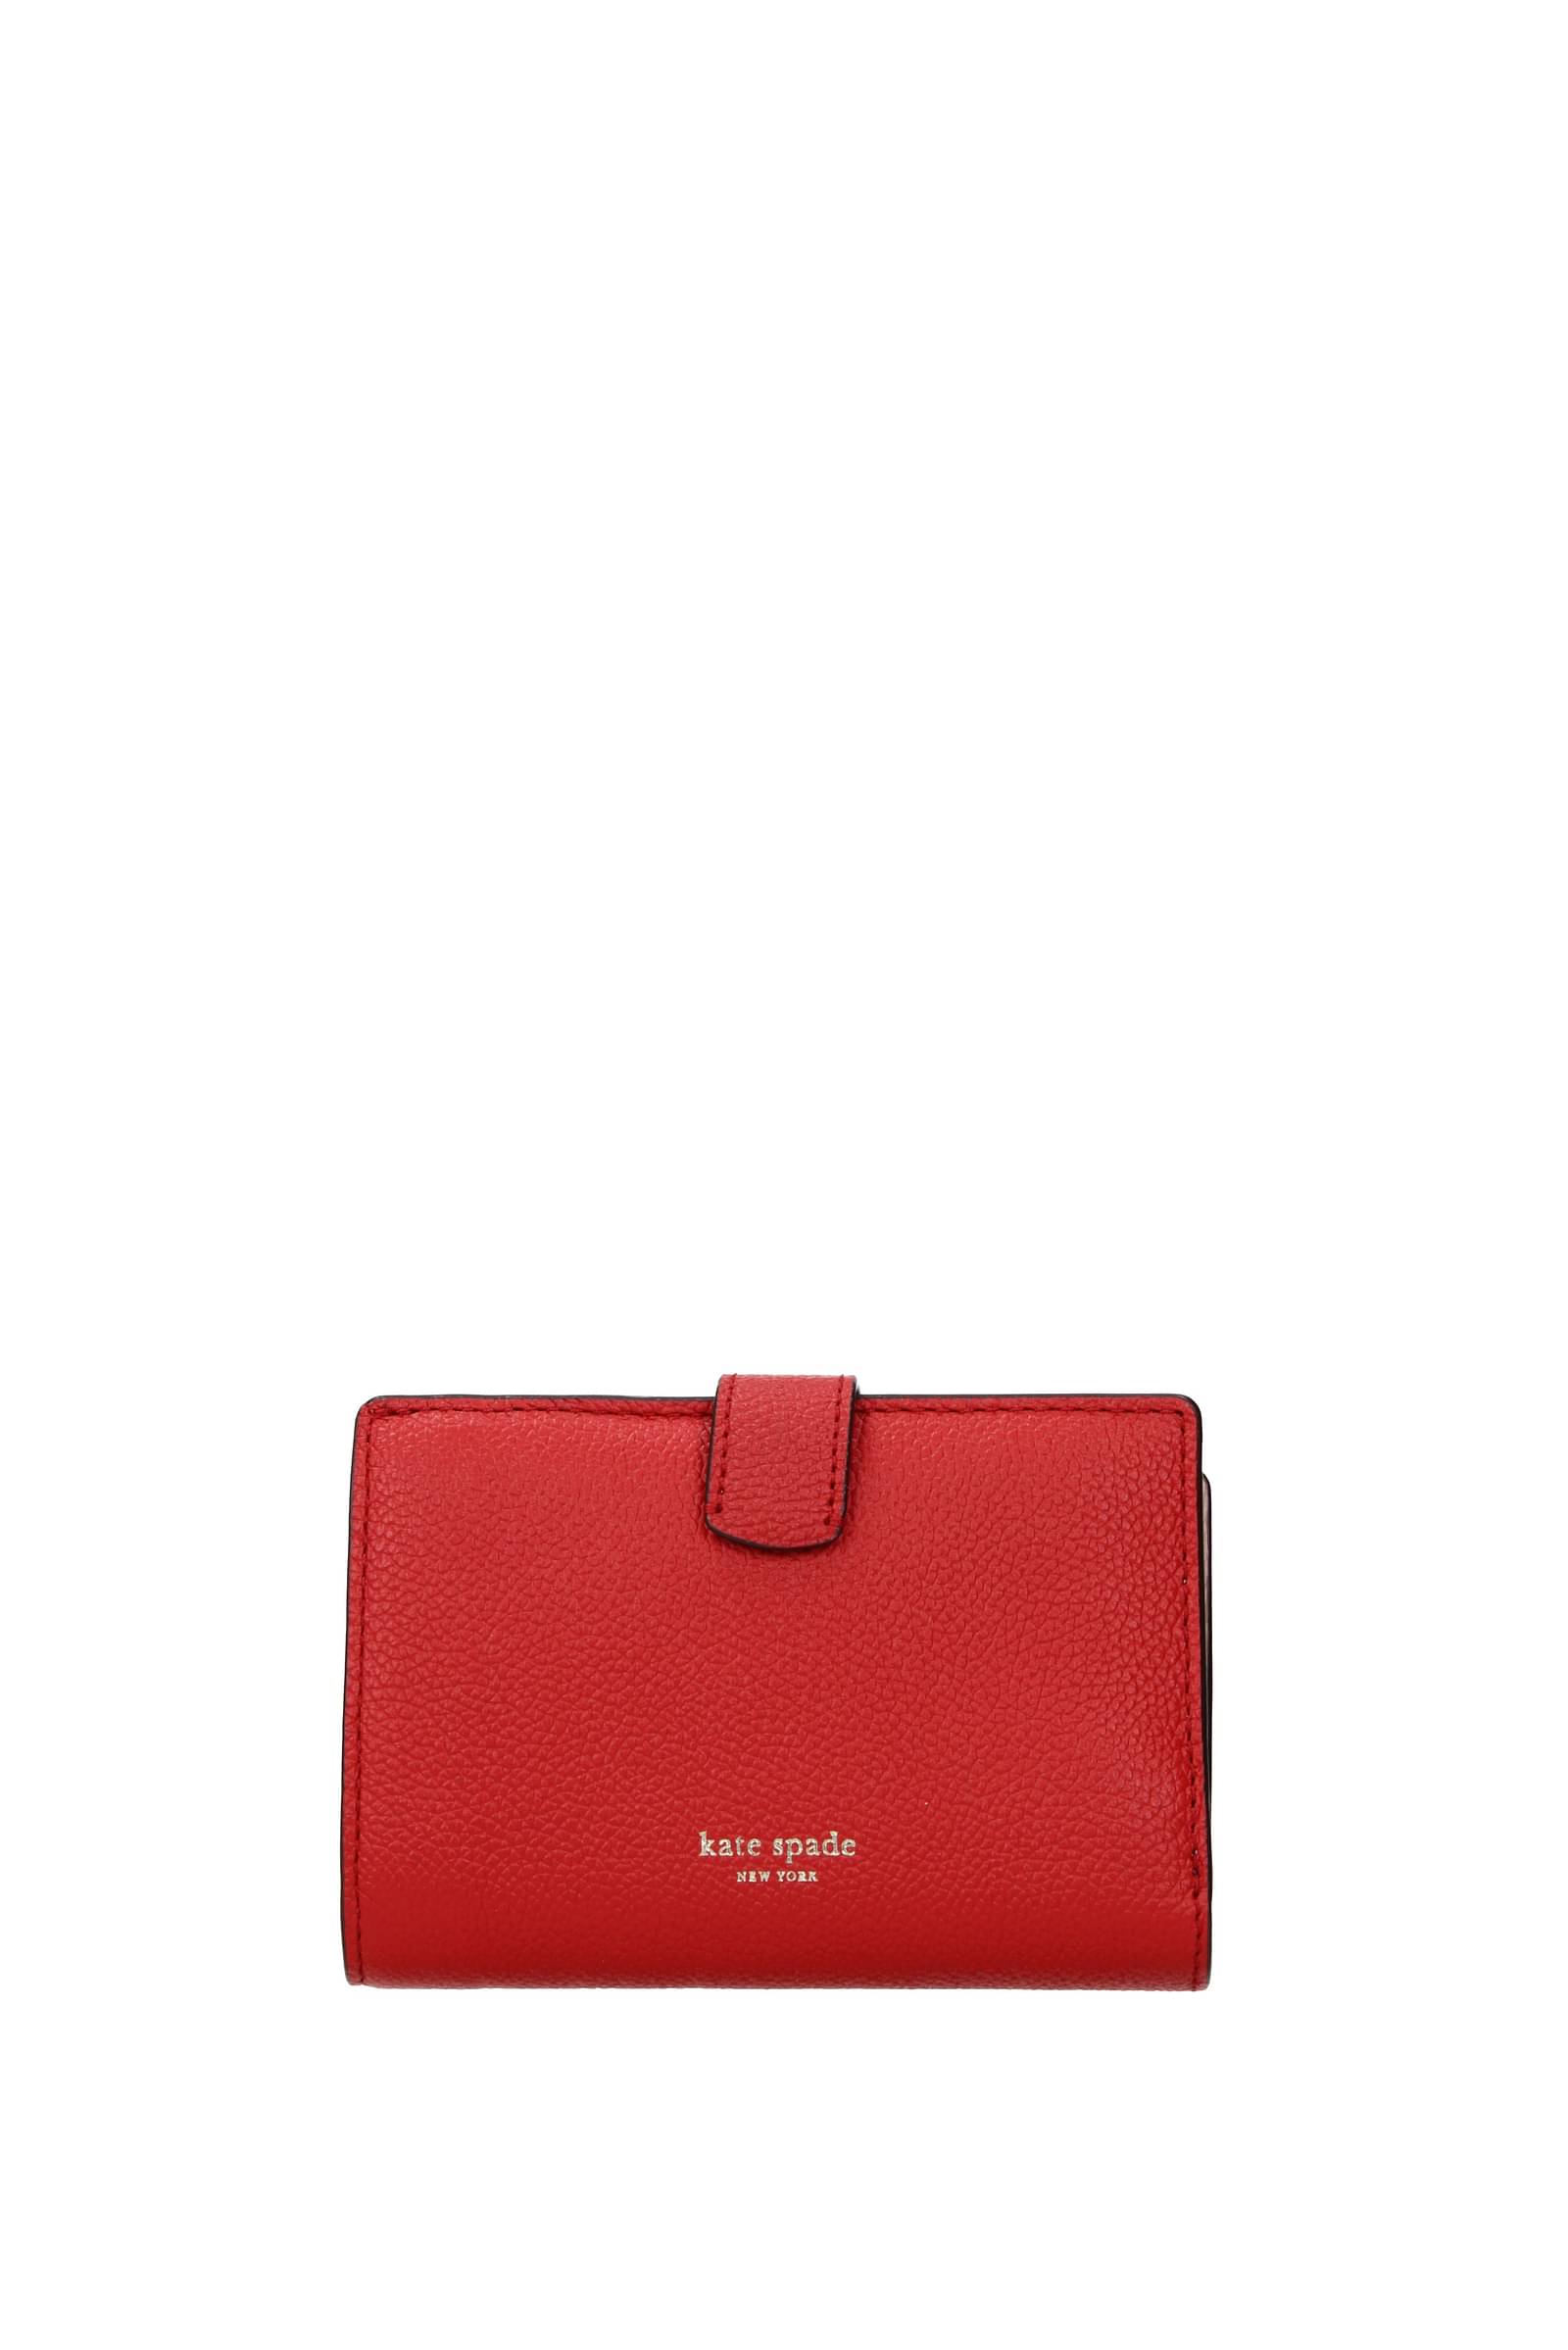 KATE SPADE Berkshire Road Stevie Red Leather Shoulder Bag Satchel Handbag |  eBay